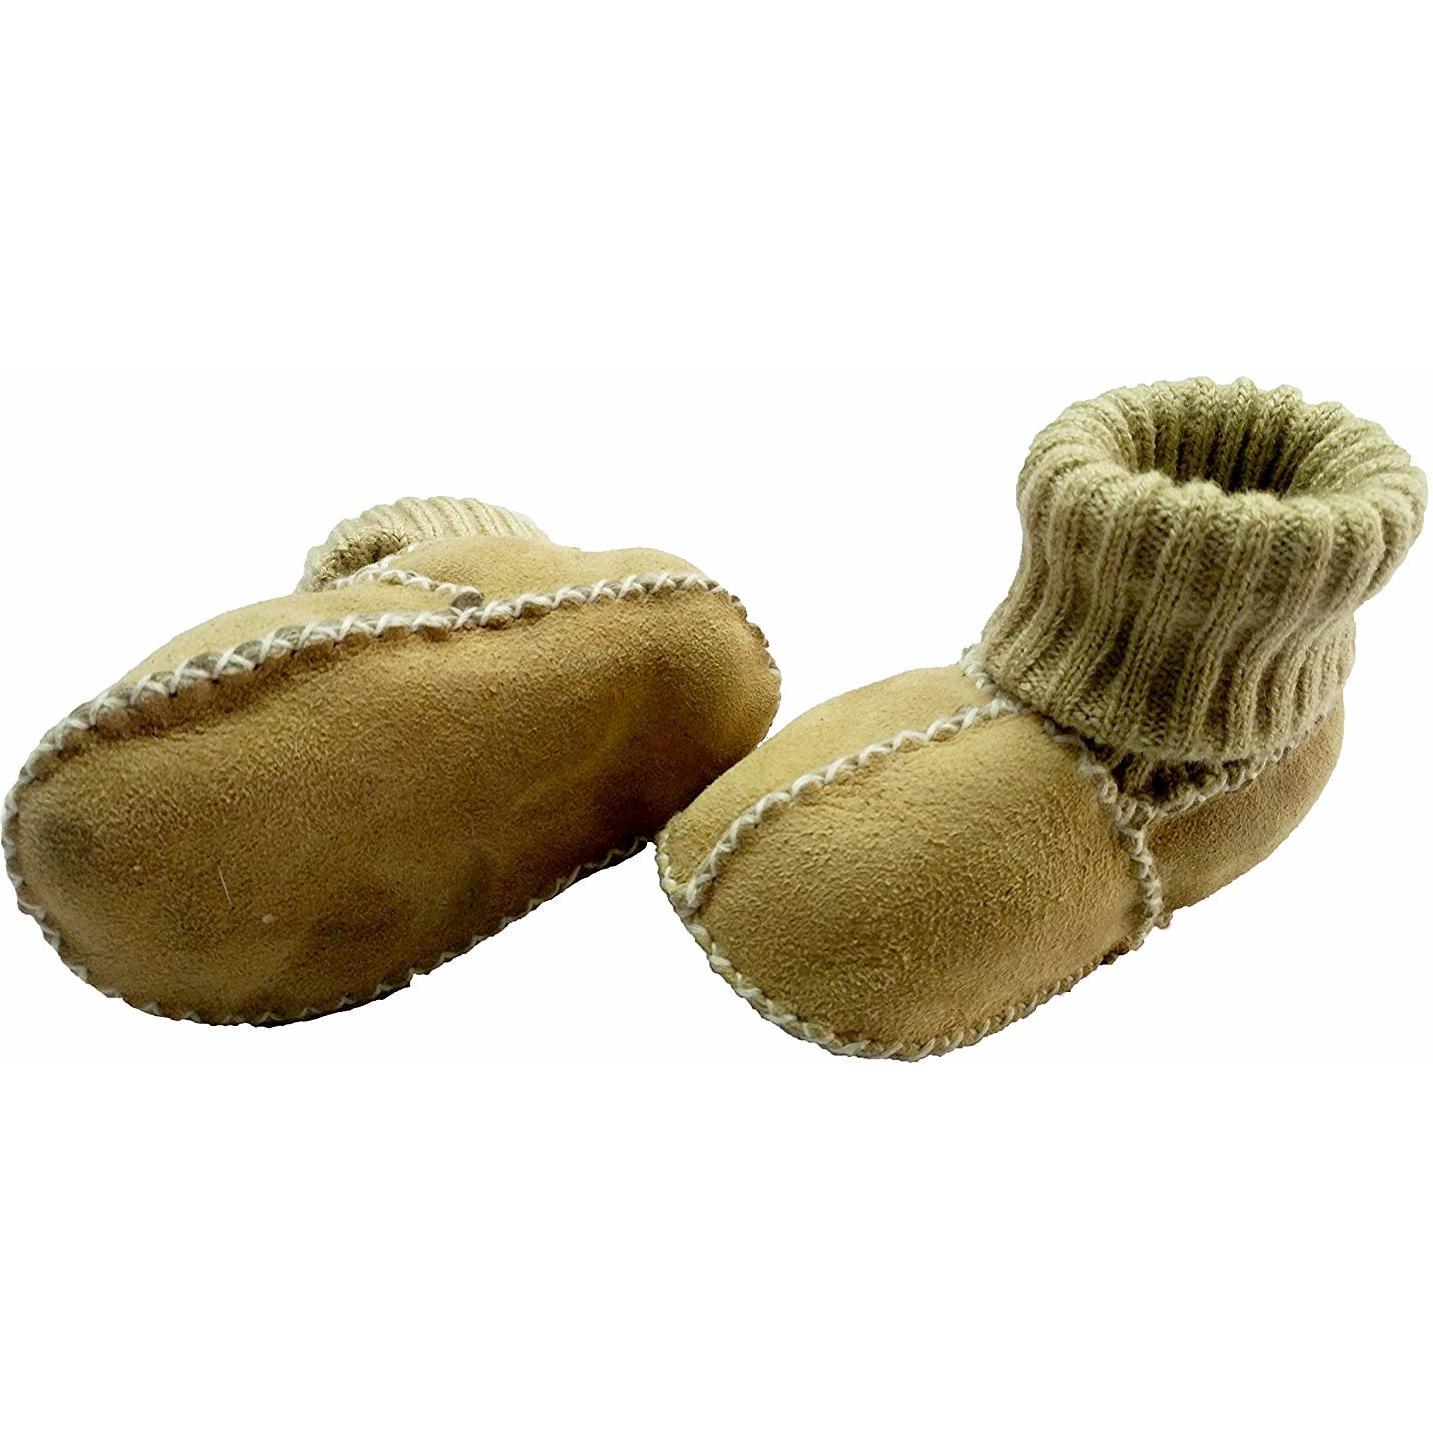 Botosei din piele si blanita de miel cu mansete tricotate - Marime 18 Altabebe MT4032L-01